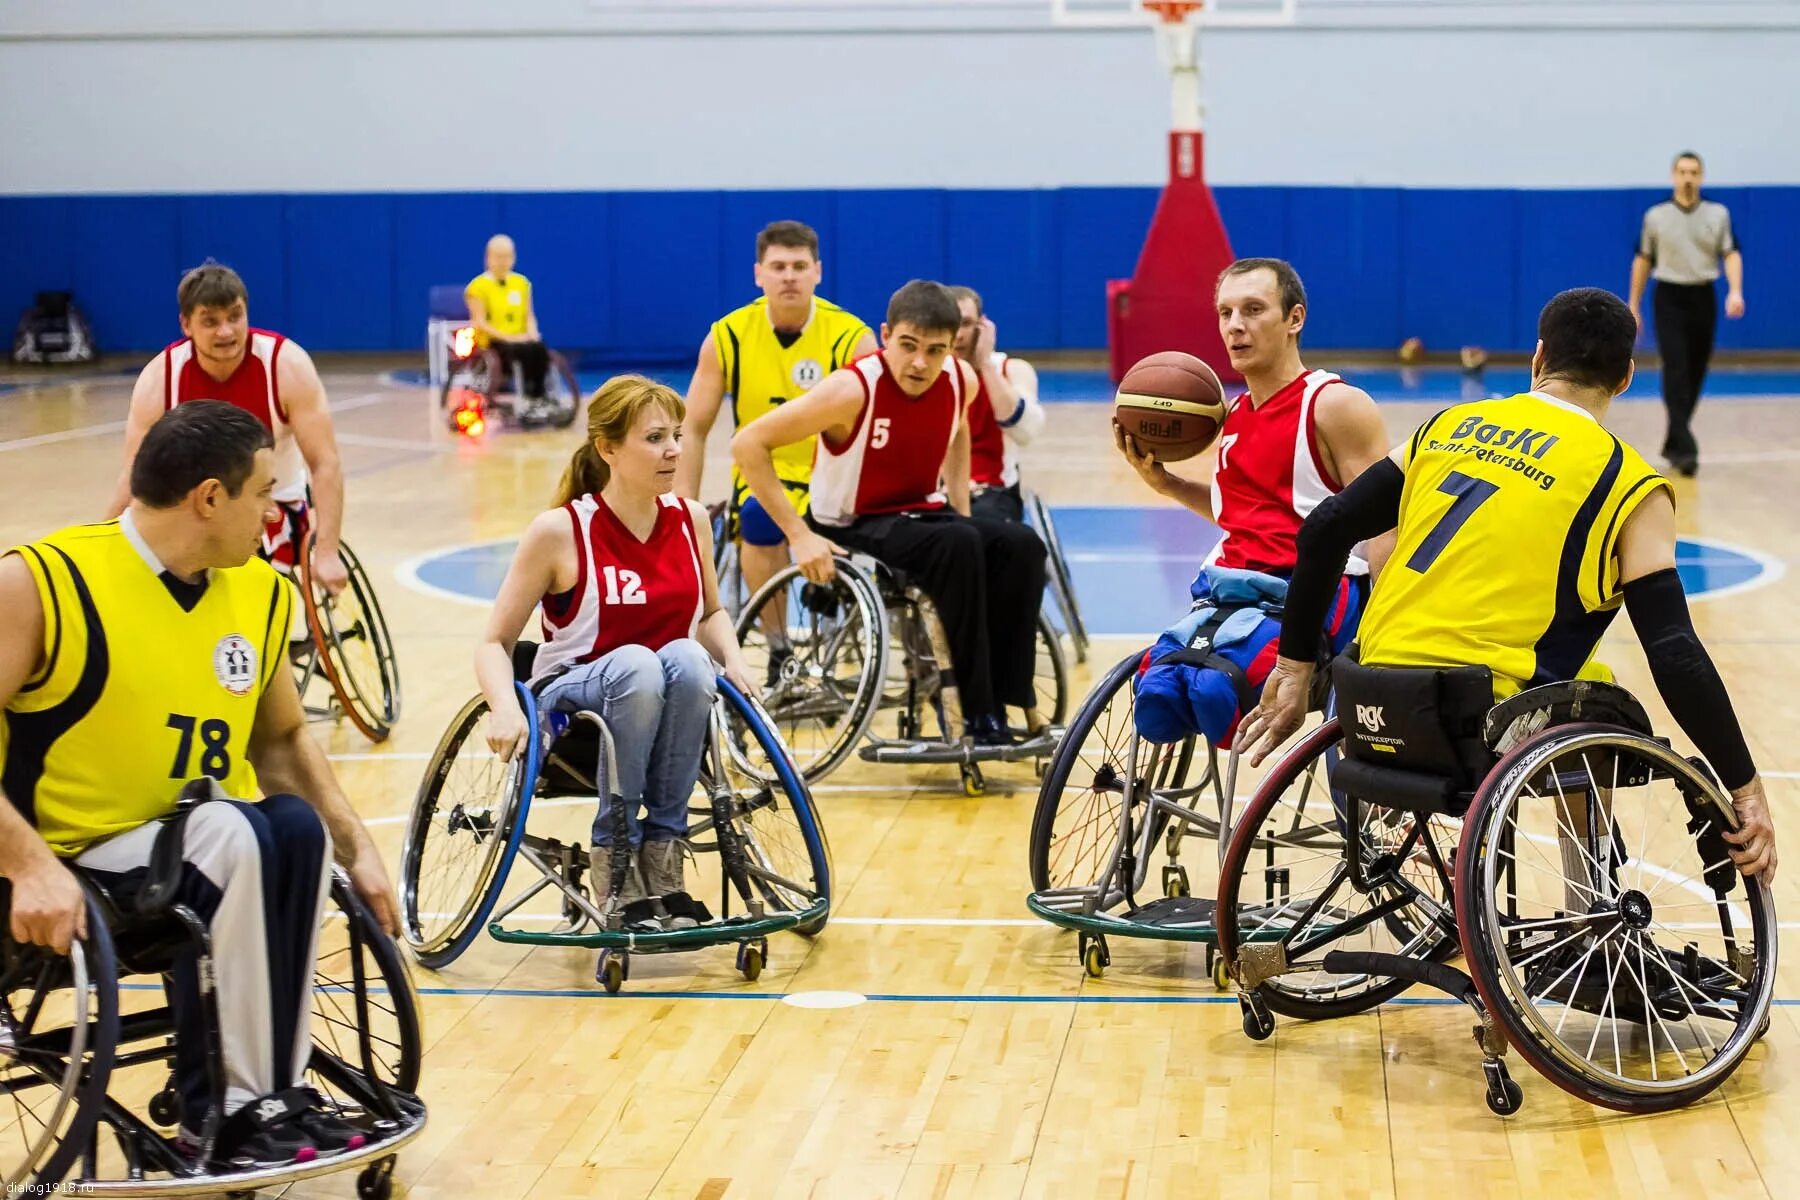 Спорт для инвалидов. Спортивные соревнования инвалидов. Спорт для людей с ограниченными возможностями. Спорт с оораниченными возможность. Рождение с инвалидностью